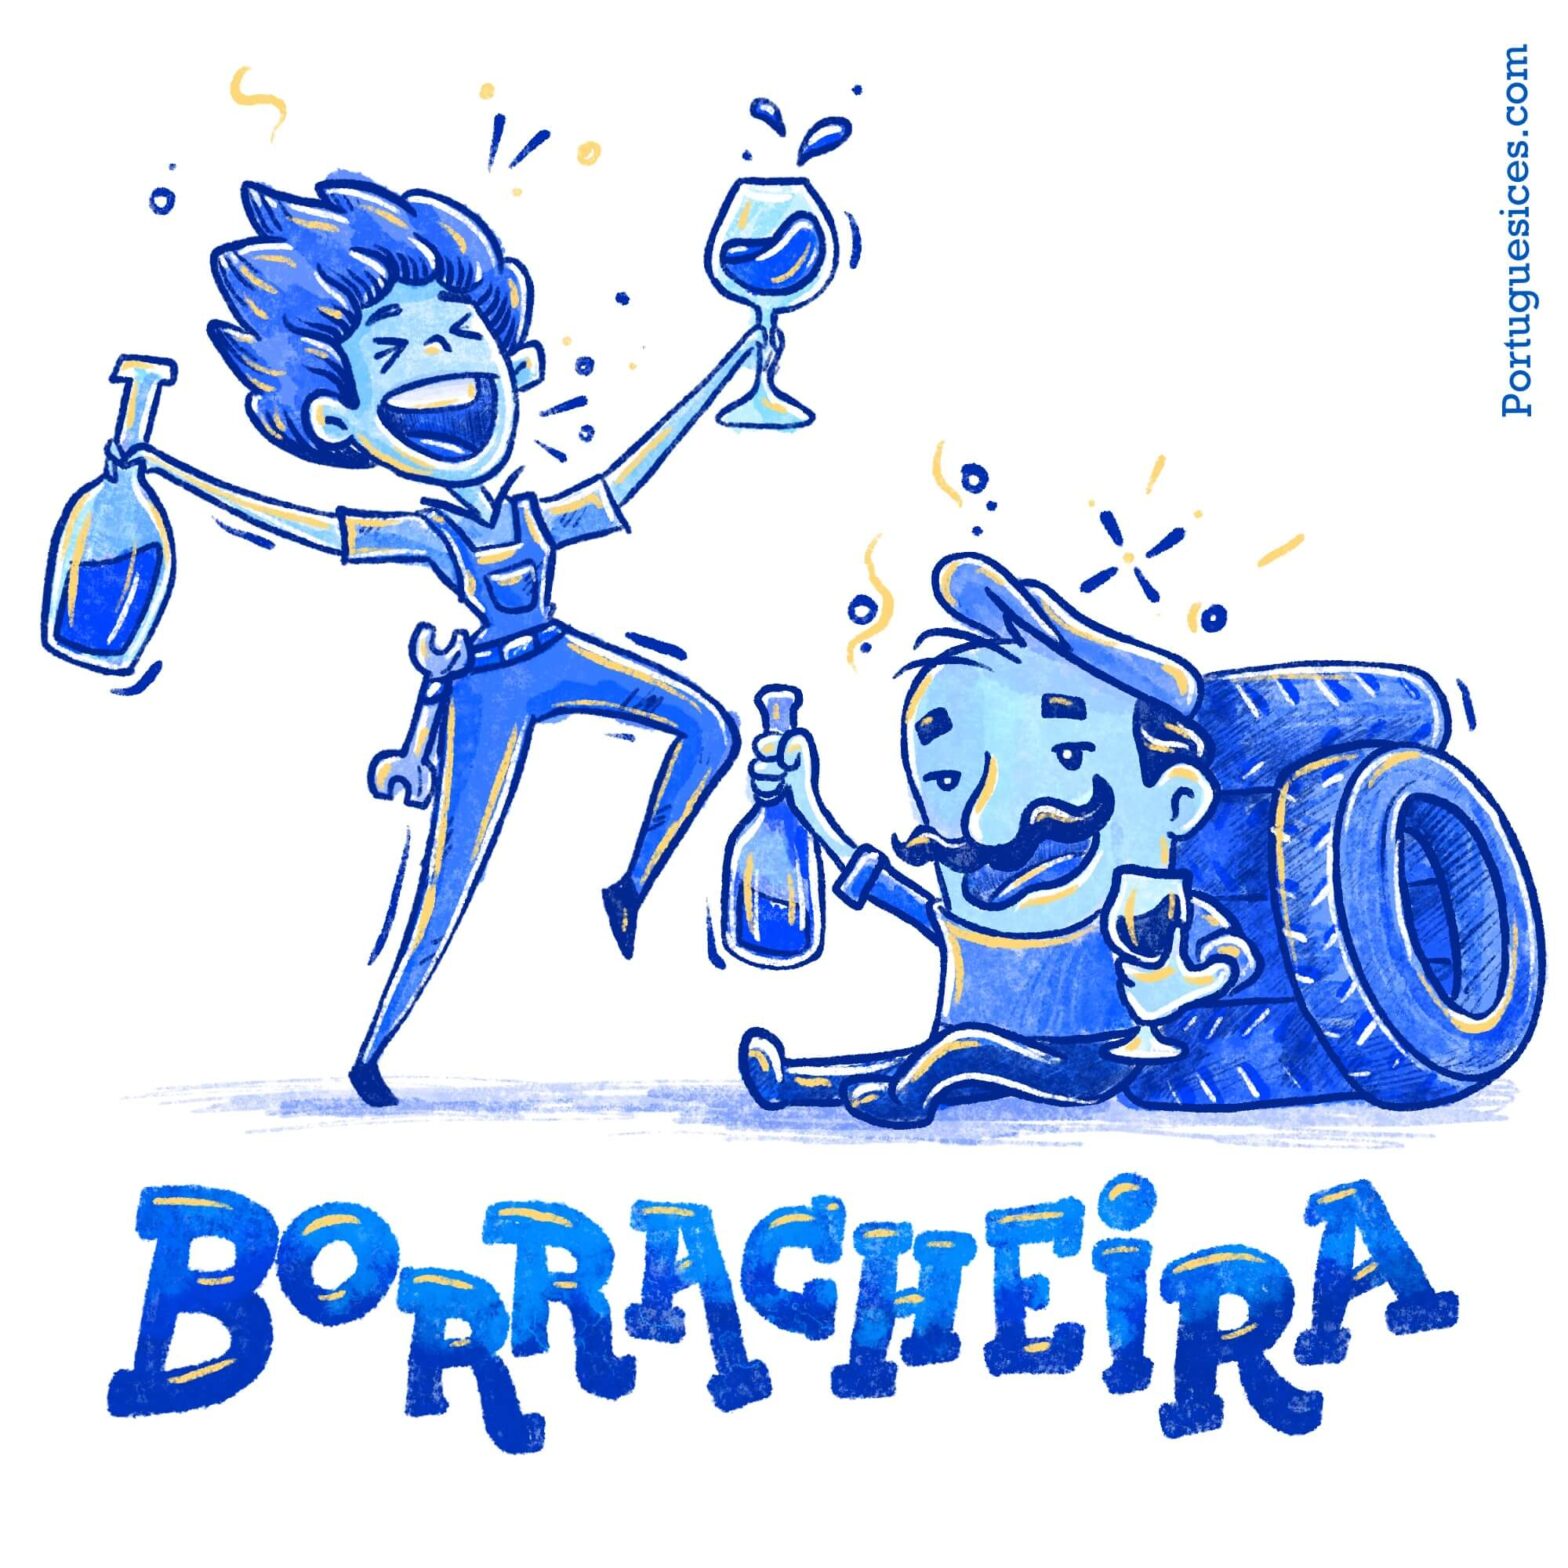 Borracheira